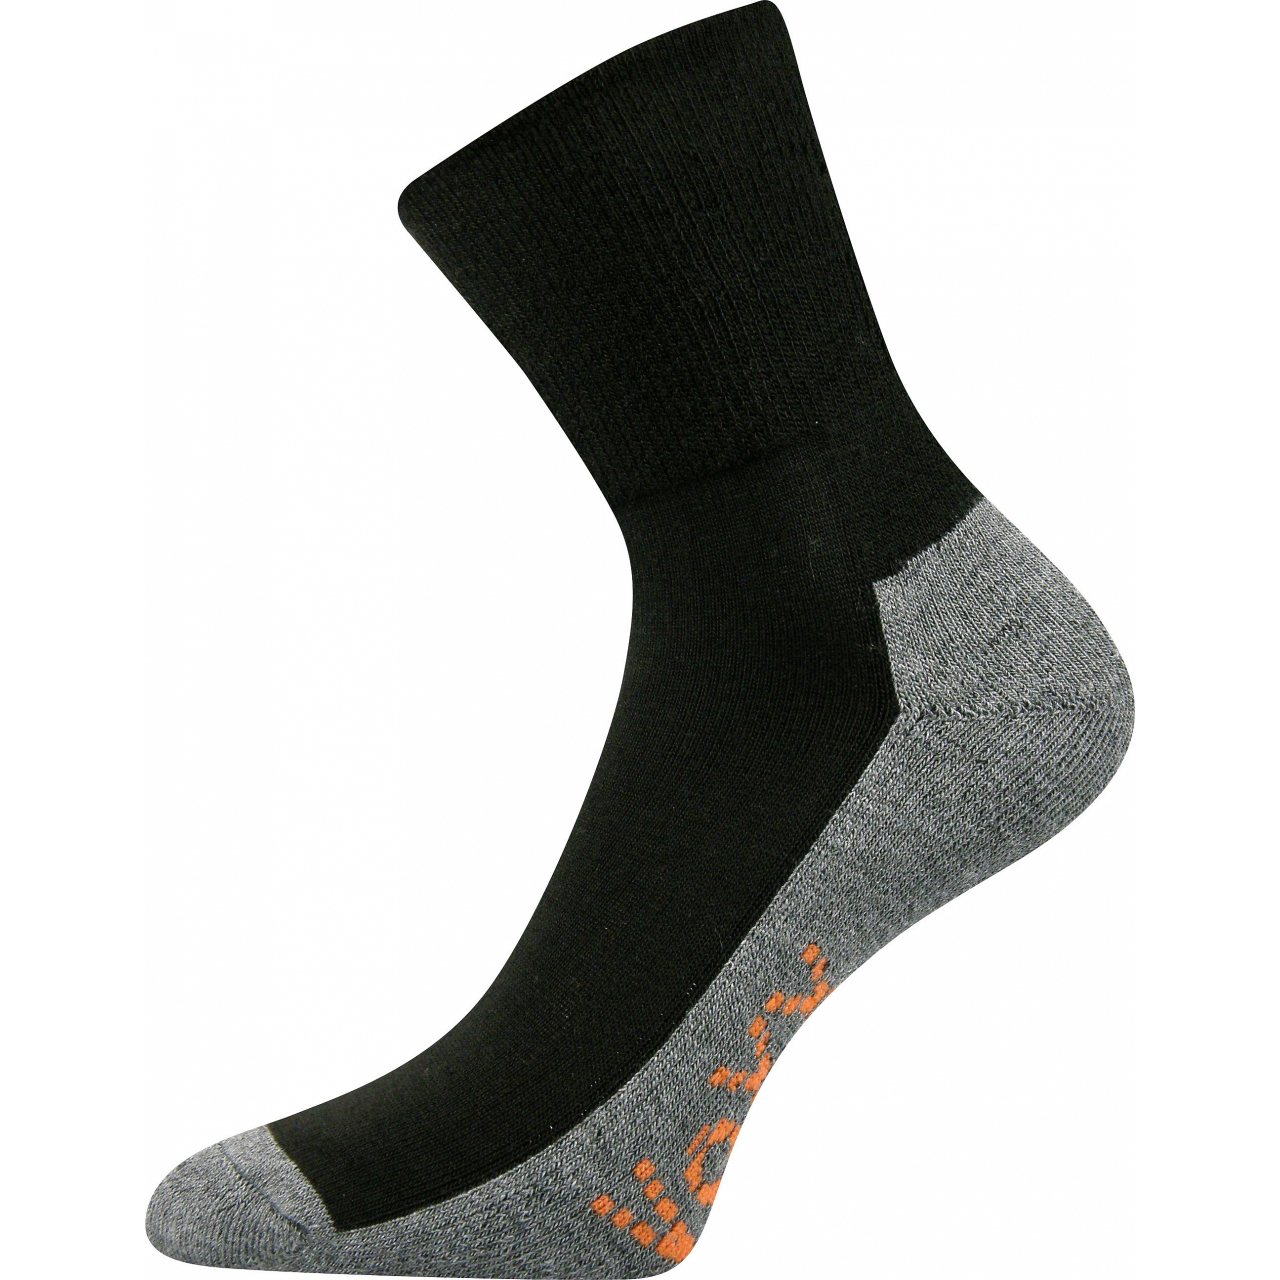 Ponožky sportovní Voxx Vigo CoolMax - černé-šedé, 35-38